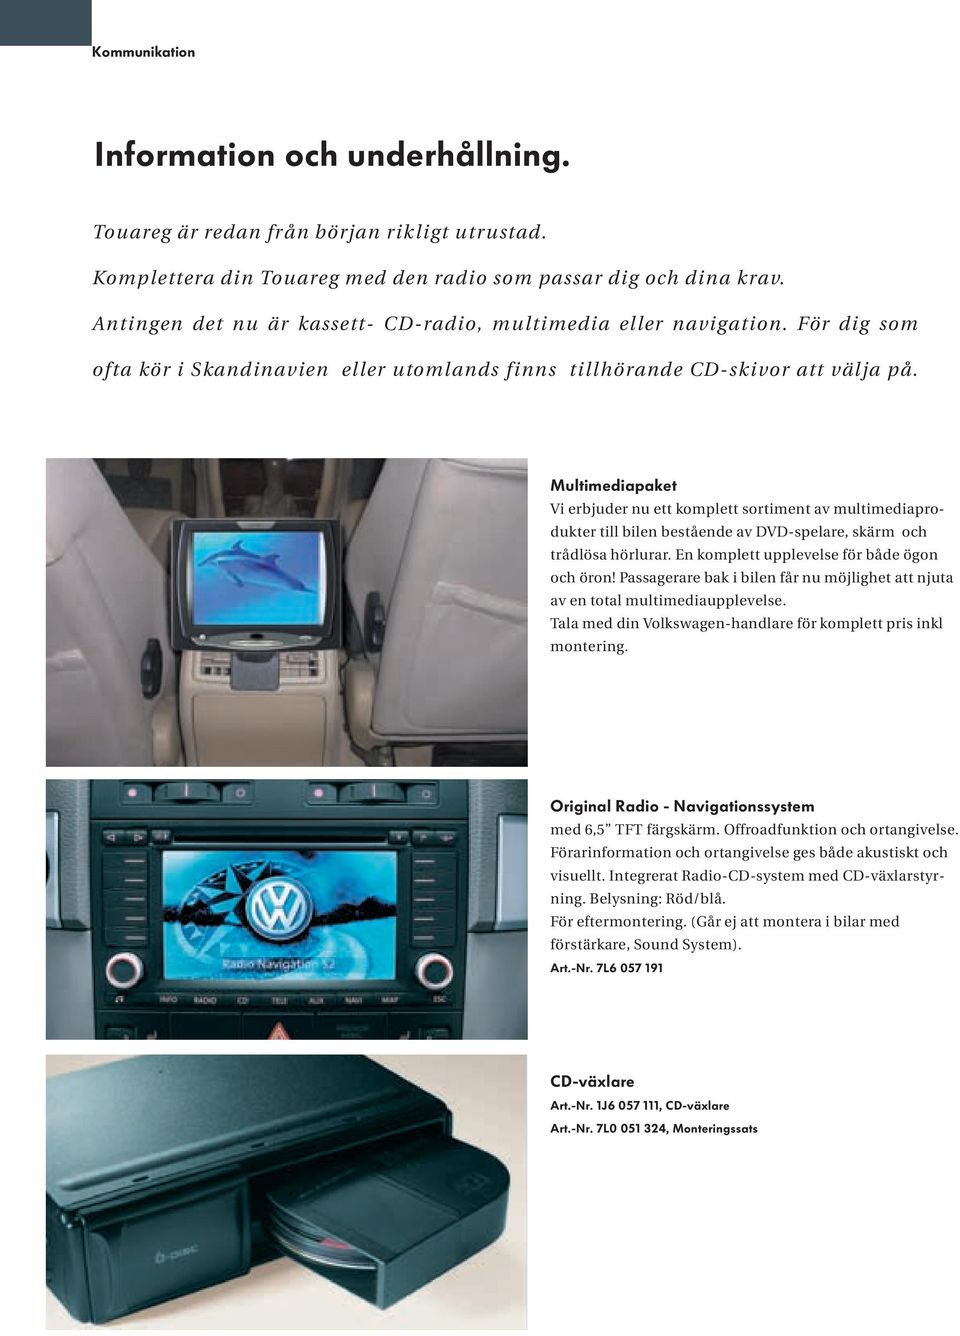 Multimediapaket Vi erbjuder nu ett komplett sortiment av multimediaprodukter till bilen bestående av DVD-spelare, skärm och trådlösa hörlurar. En komplett upplevelse för både ögon och öron!